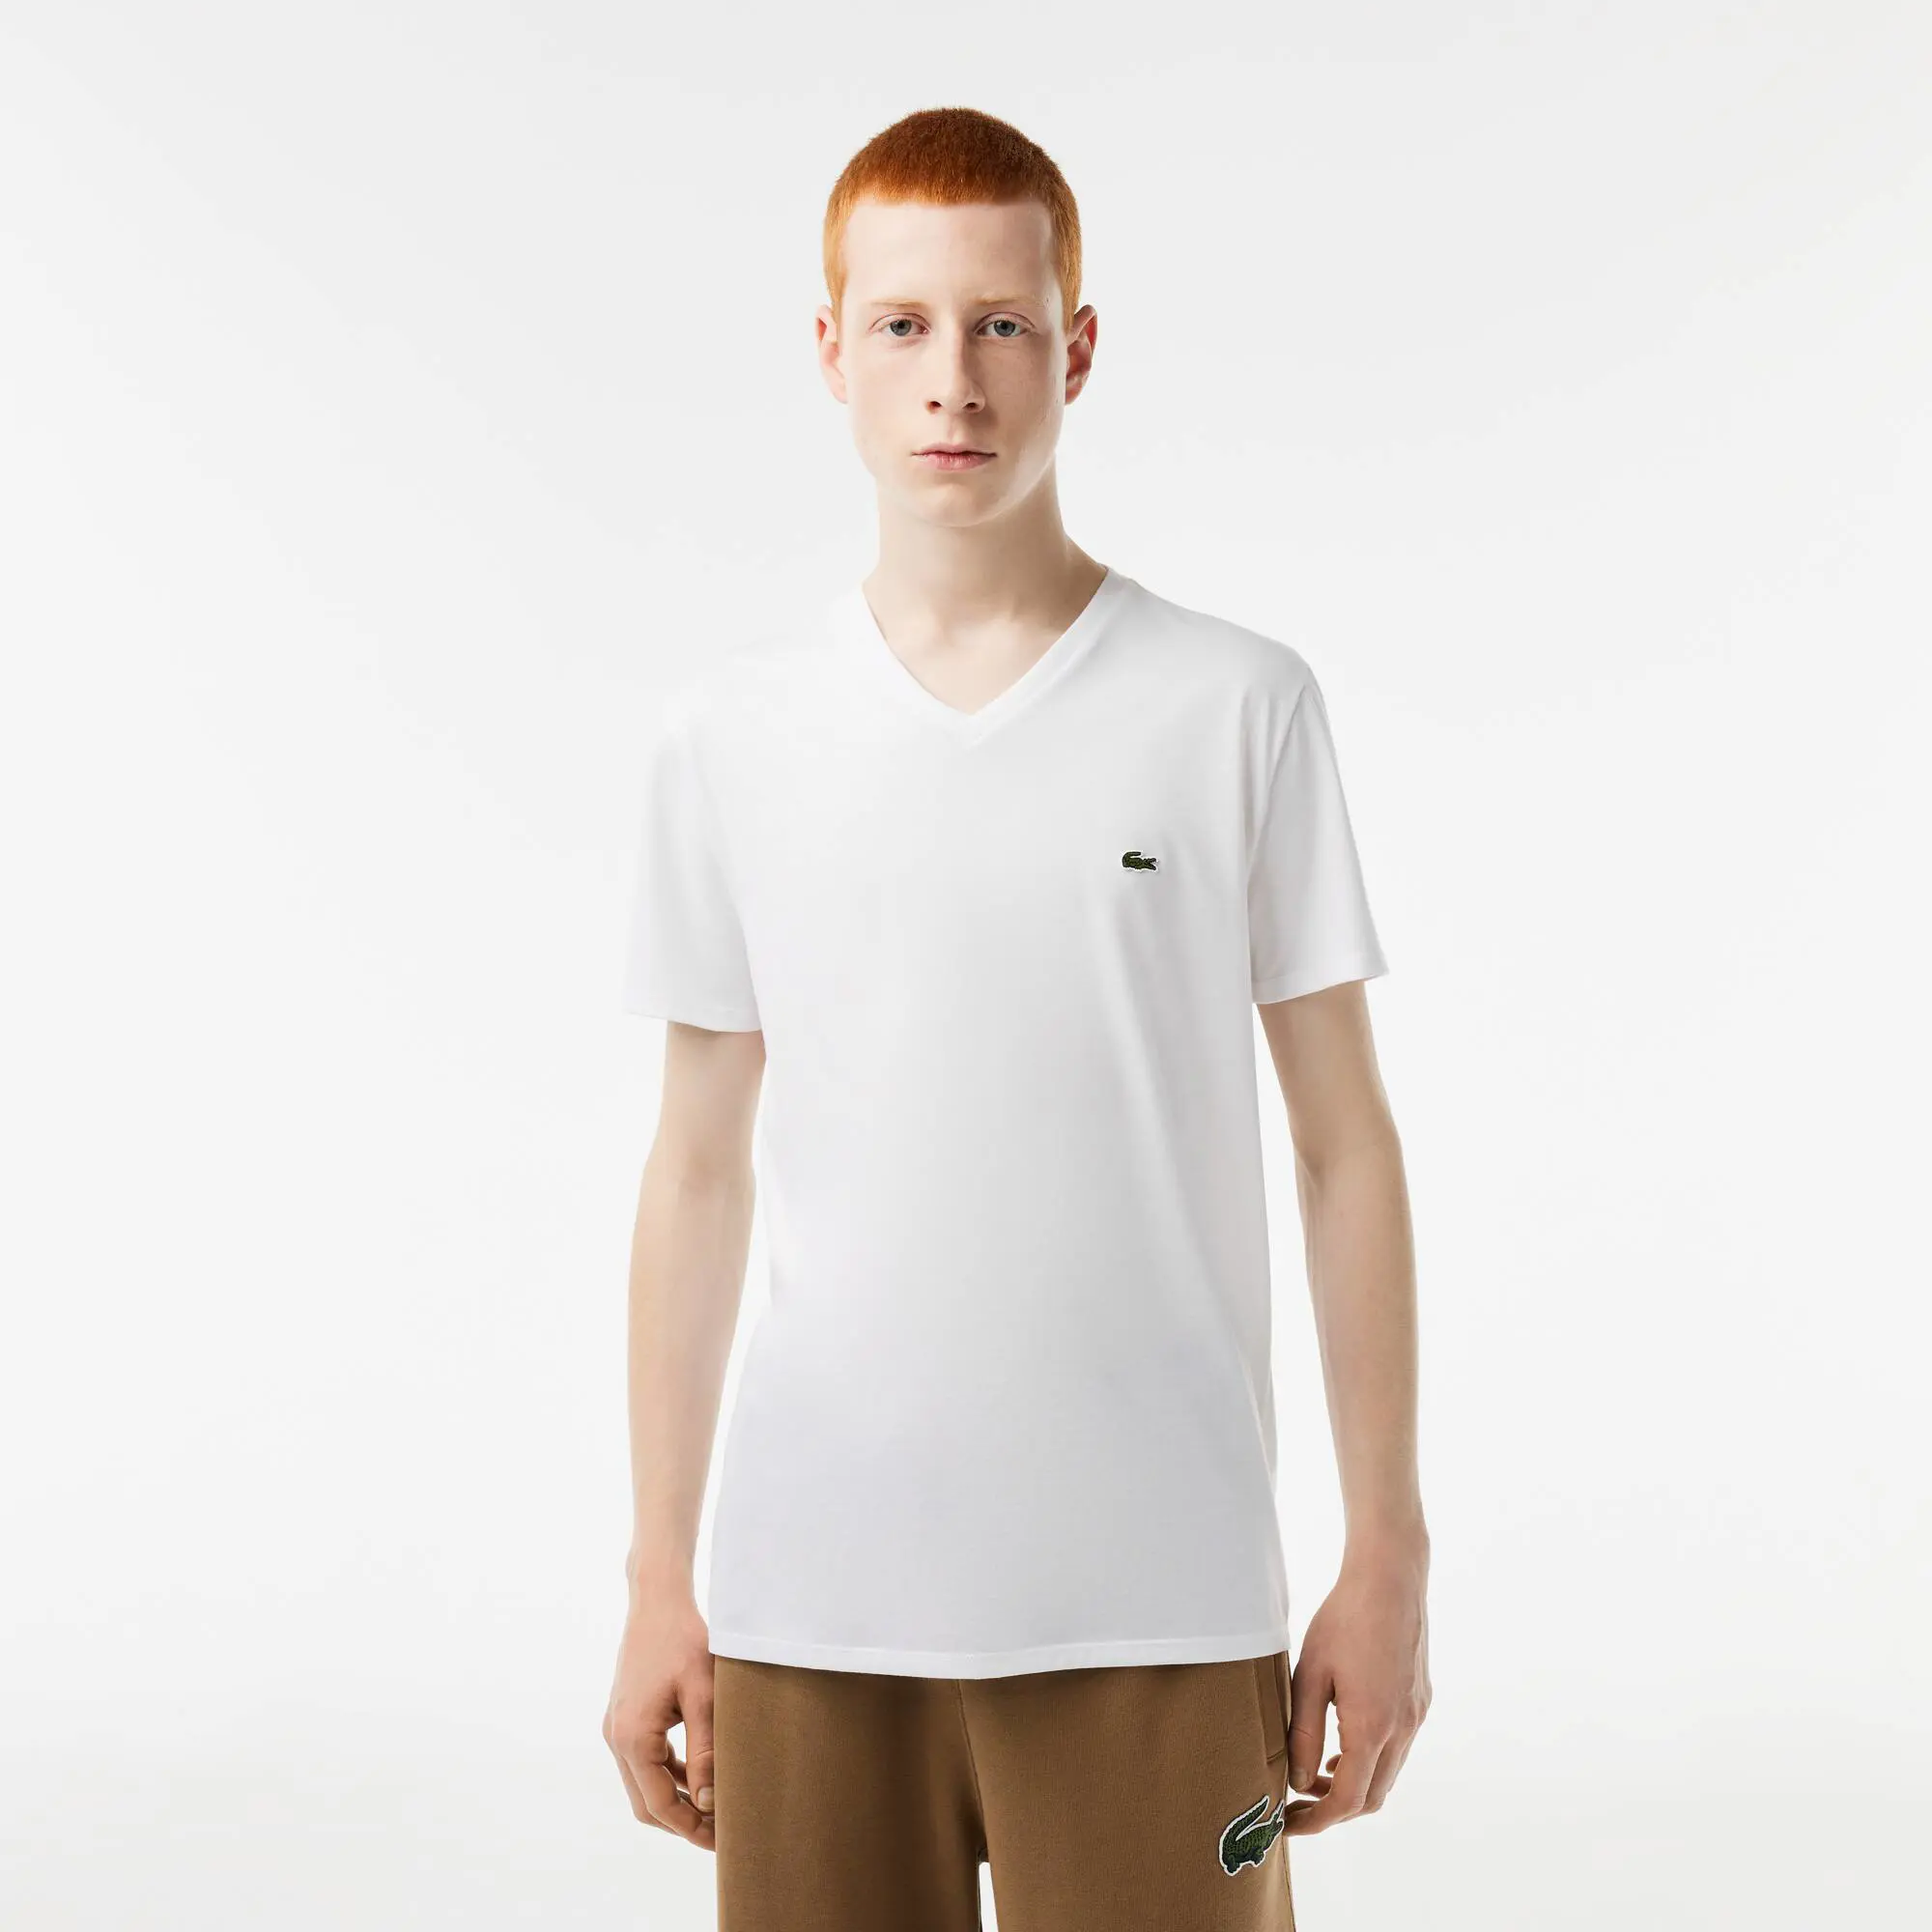 Lacoste Men's V-Neck Pima Cotton Jersey T-Shirt. 1